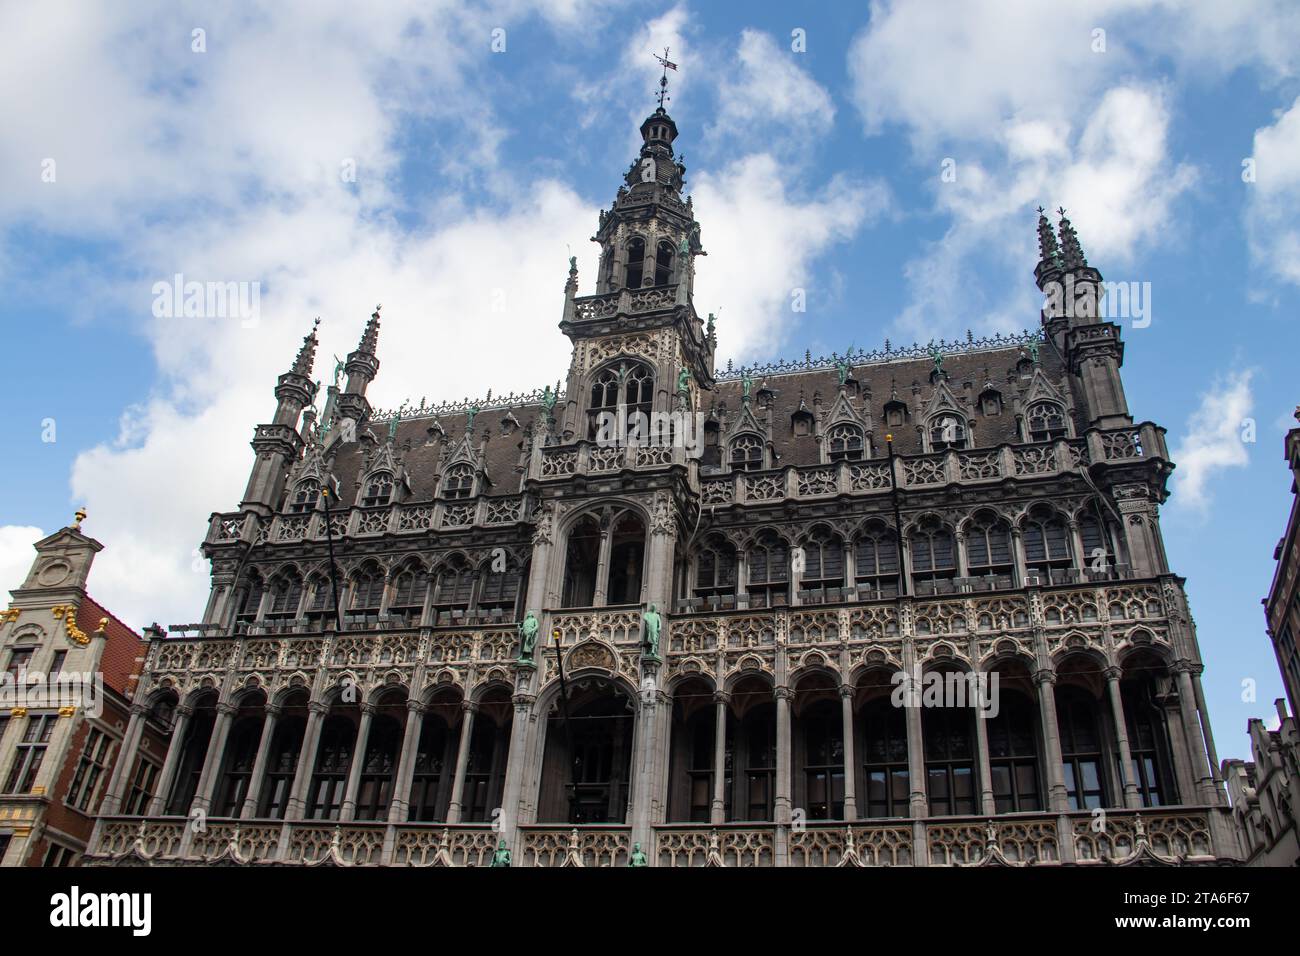 La Grand-place de Bruxelles datant de la fin du 17e siècle. Les bâtiments entourant la place comprennent d'opulentes salles de guildhalls baroques Banque D'Images